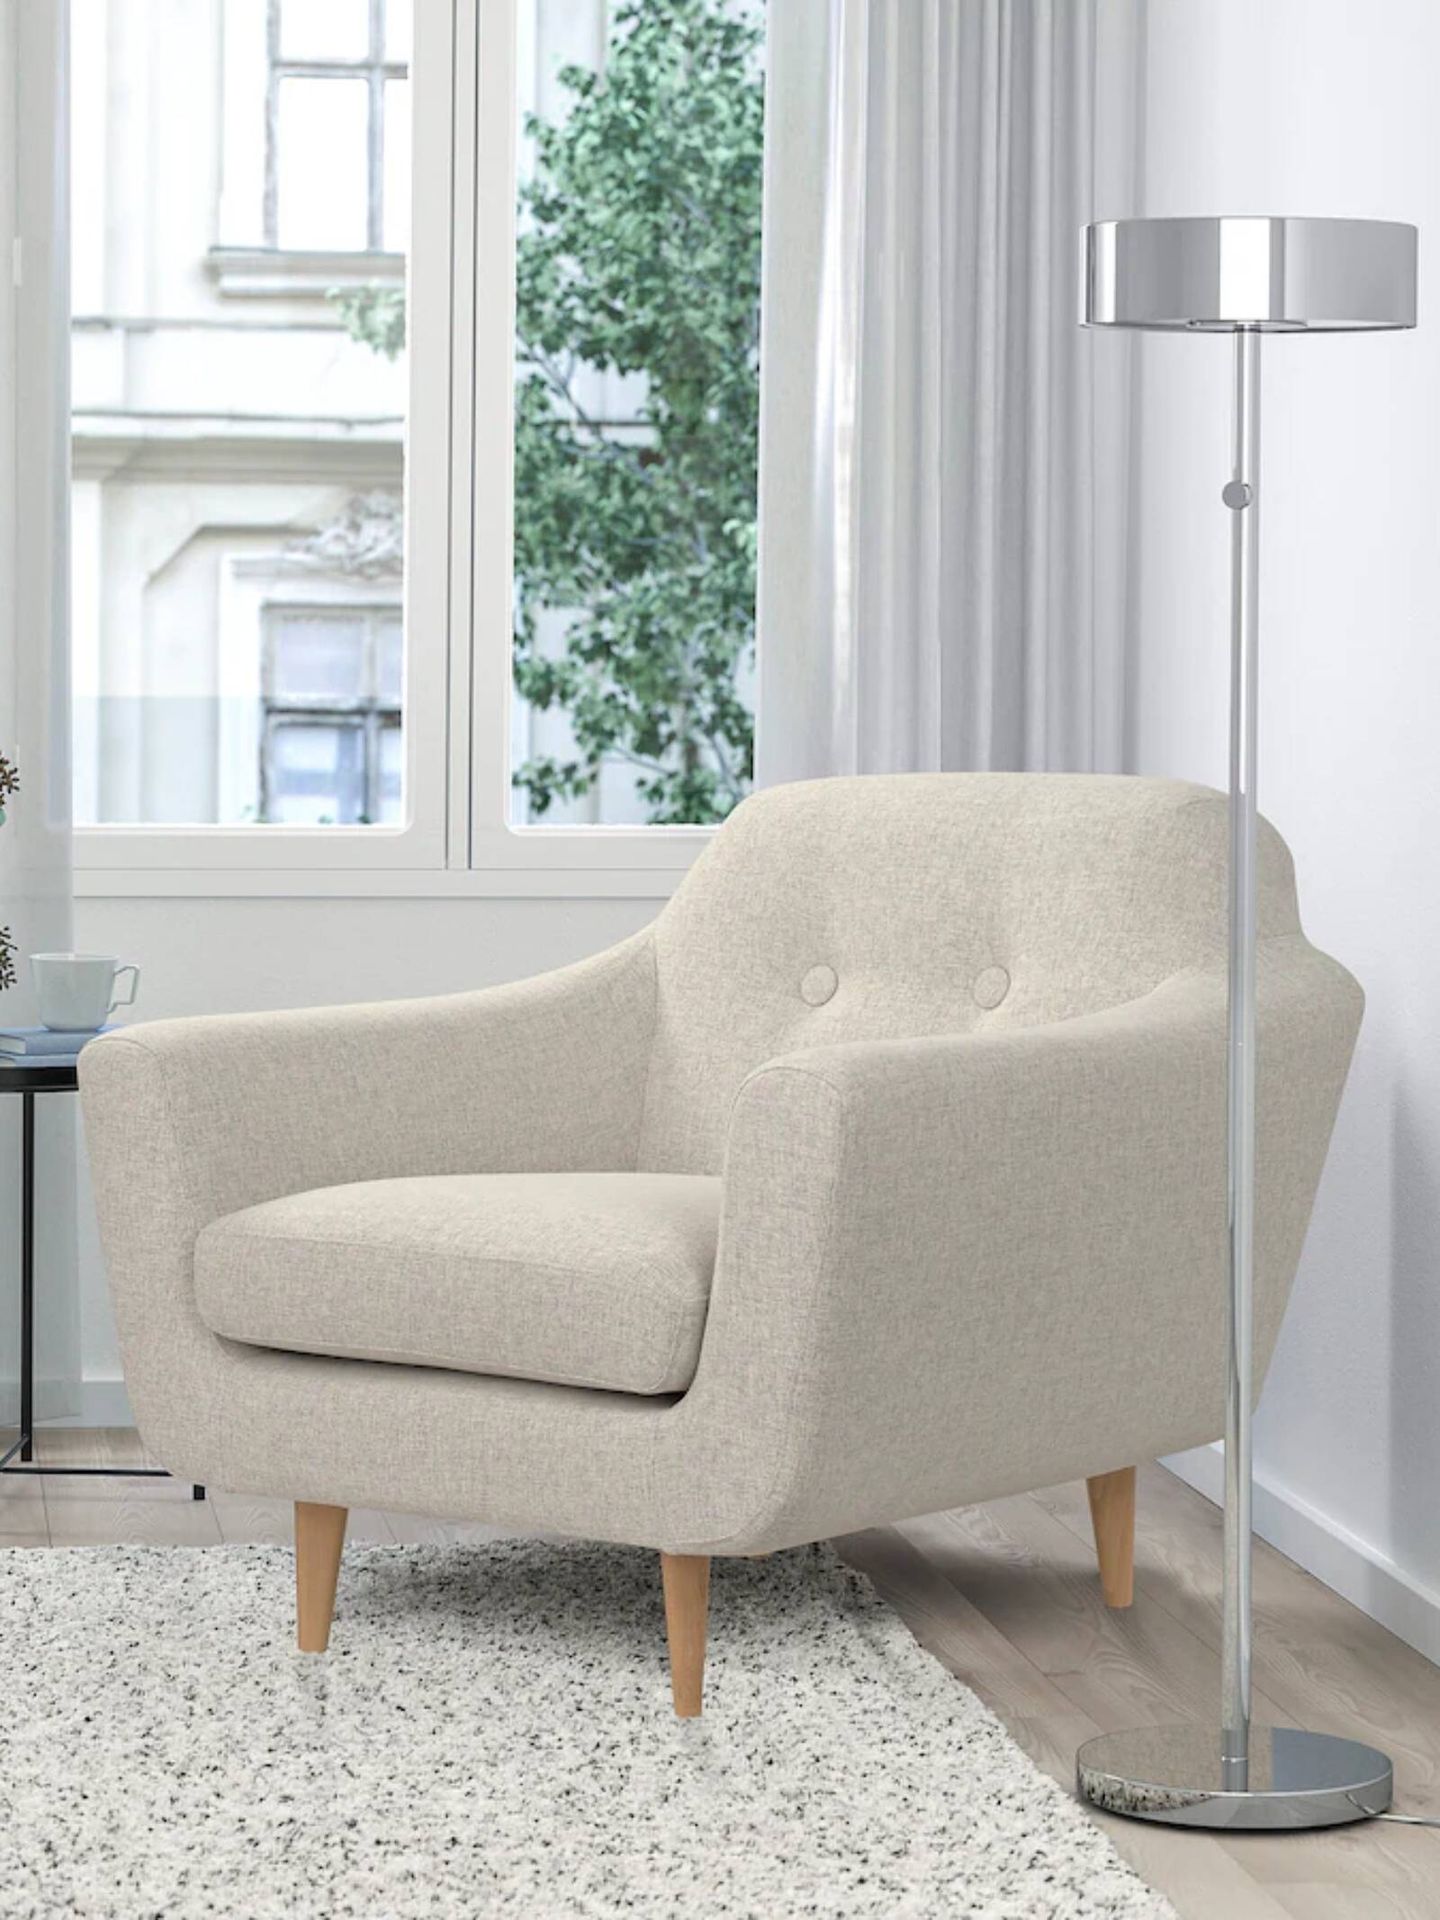 El nuevo mueble de Ikea es este sillón para todas las casas. (Cortesía)